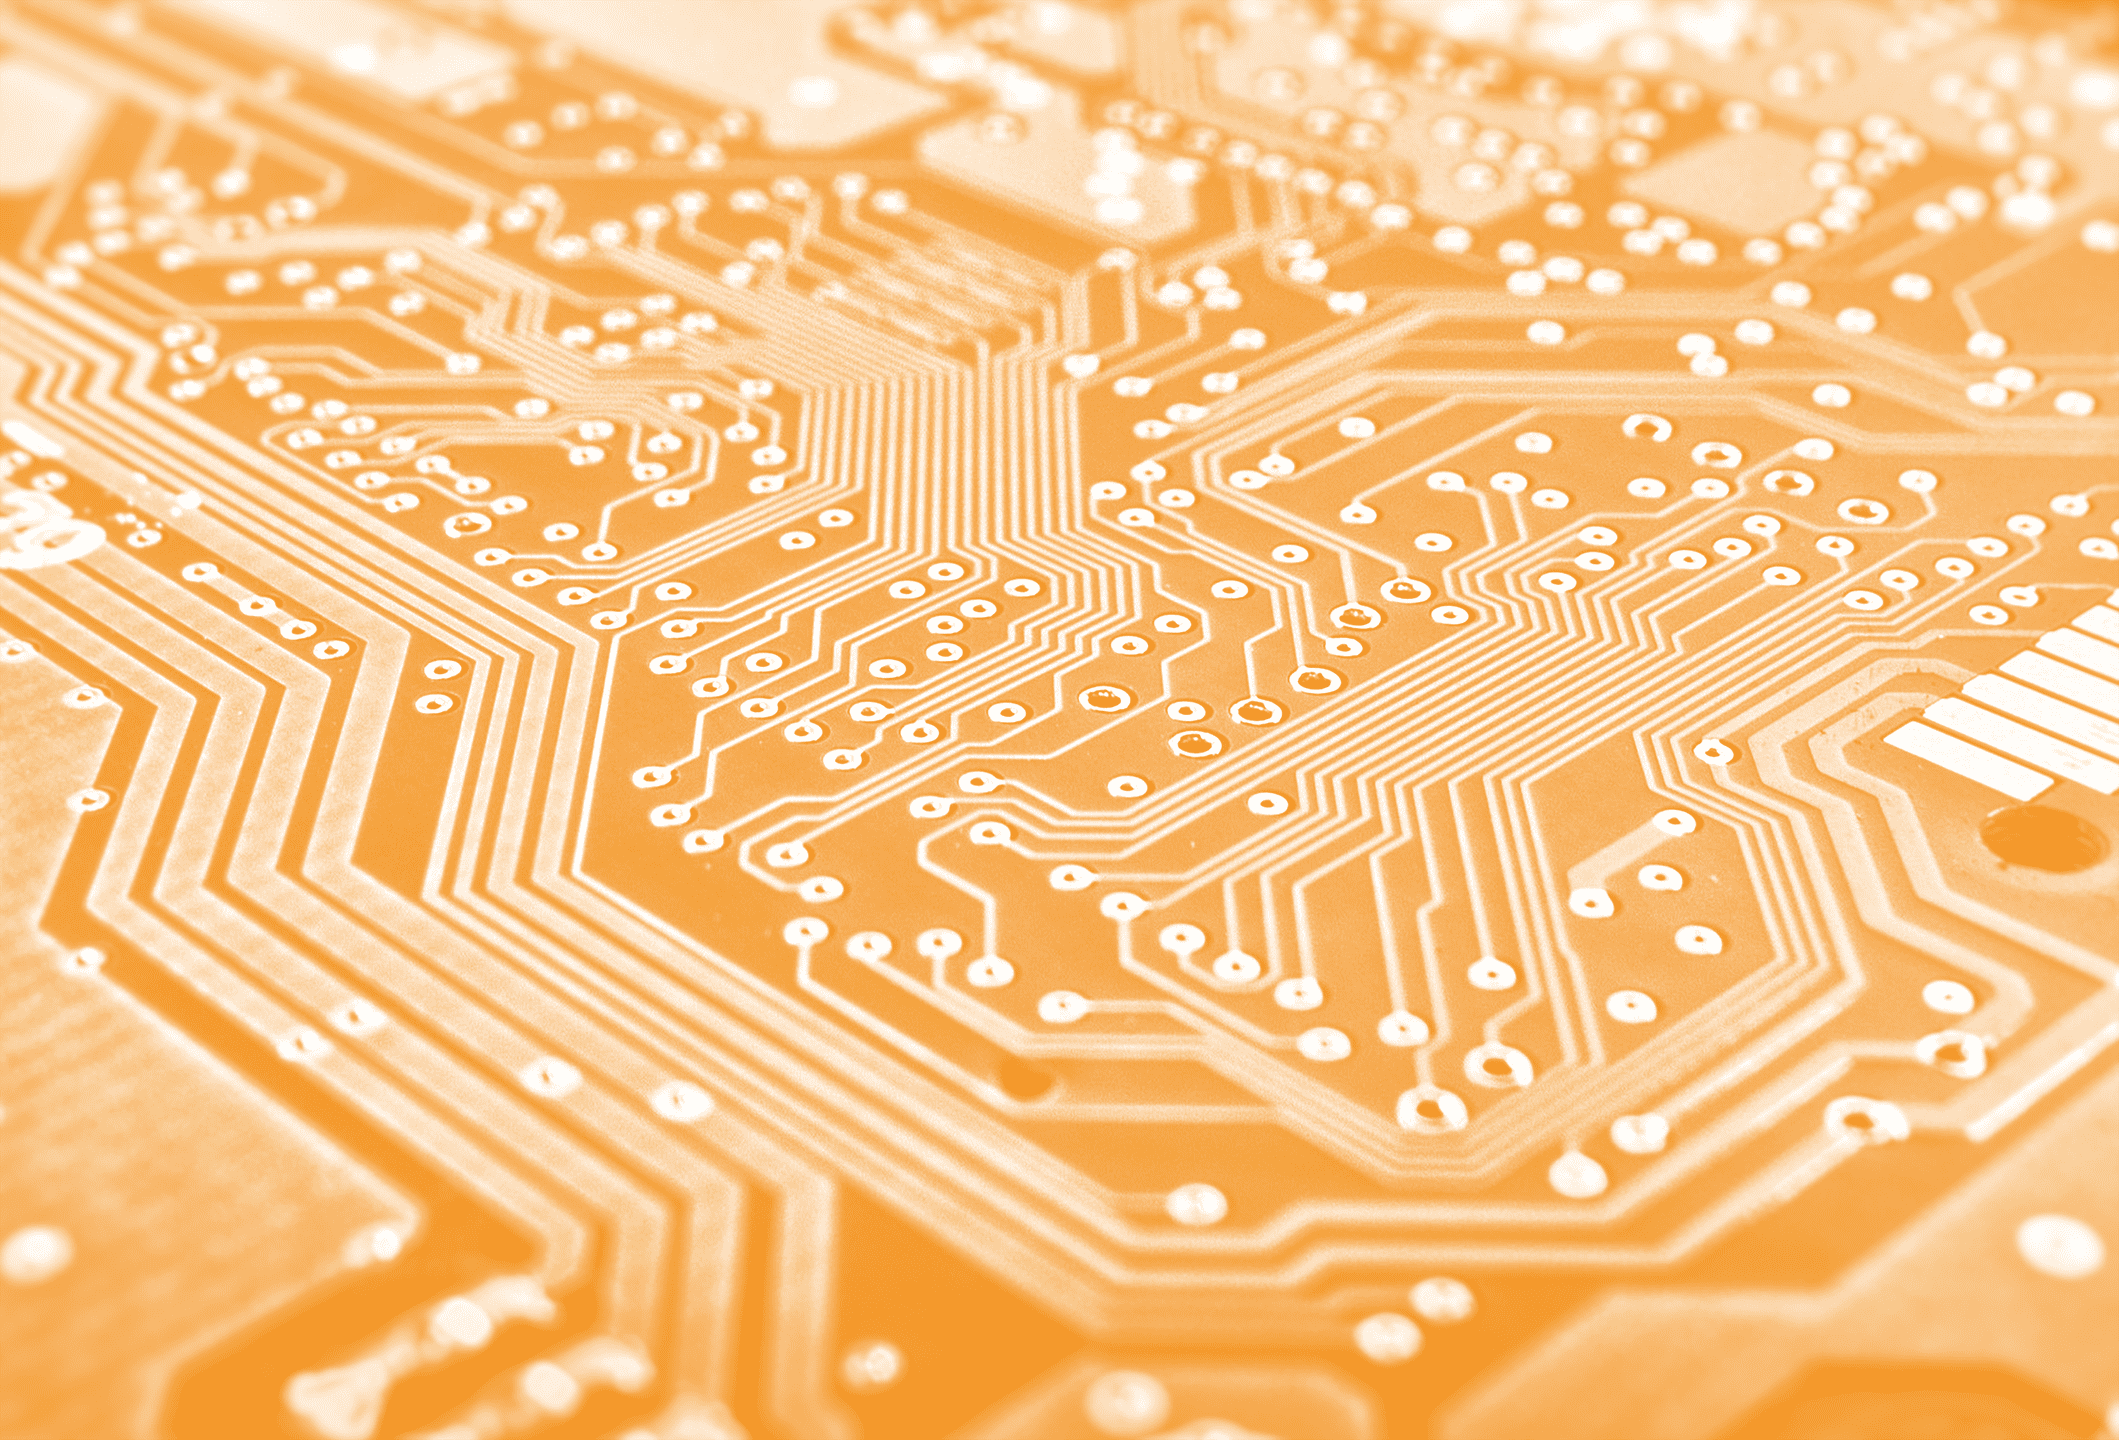 Fondo de componentes electrónicos, formado por una placa PCB en color naranja corporativo